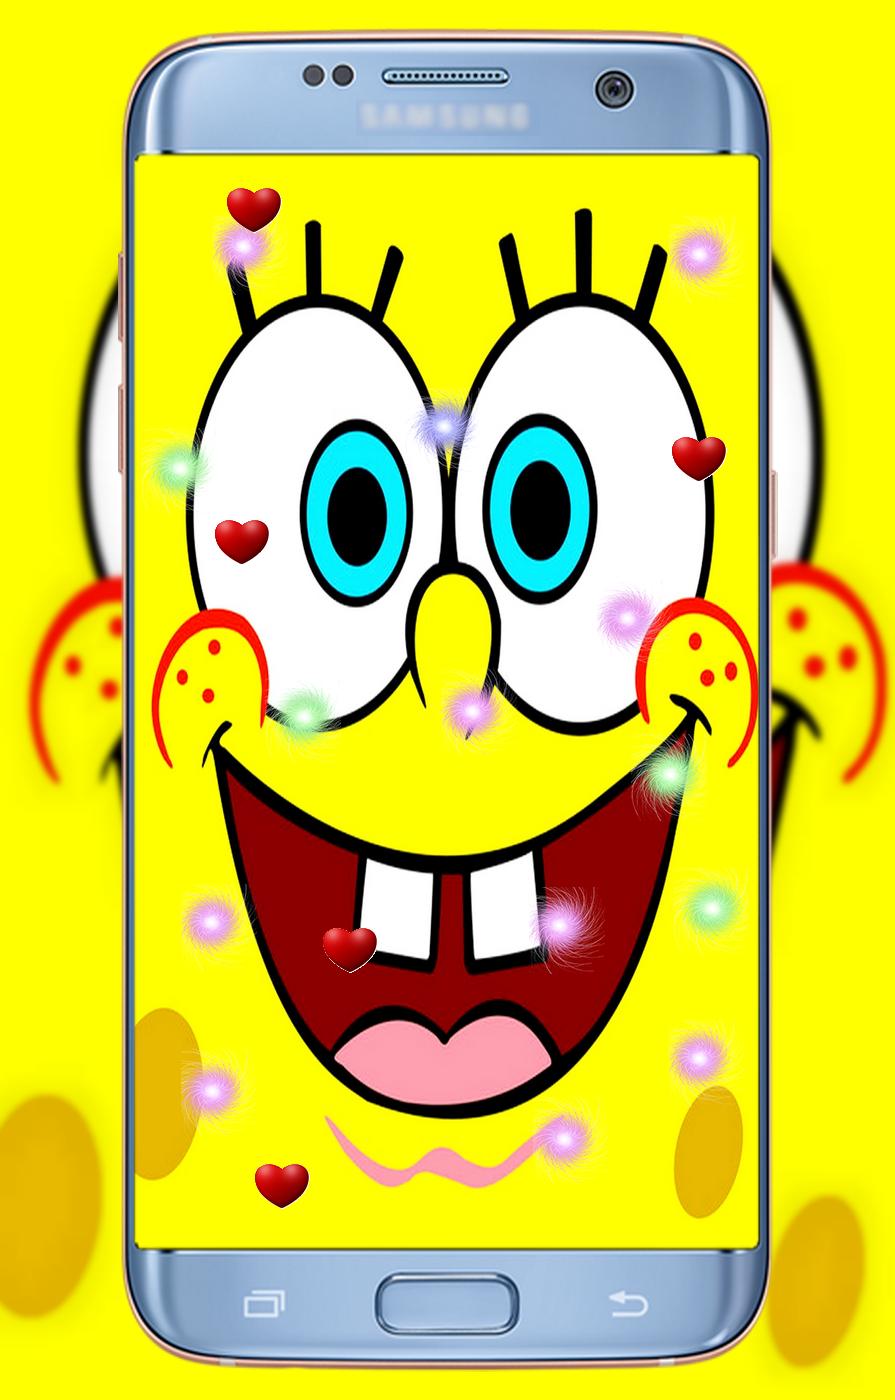  Spongebob  Bacot  Hd Moa Gambar